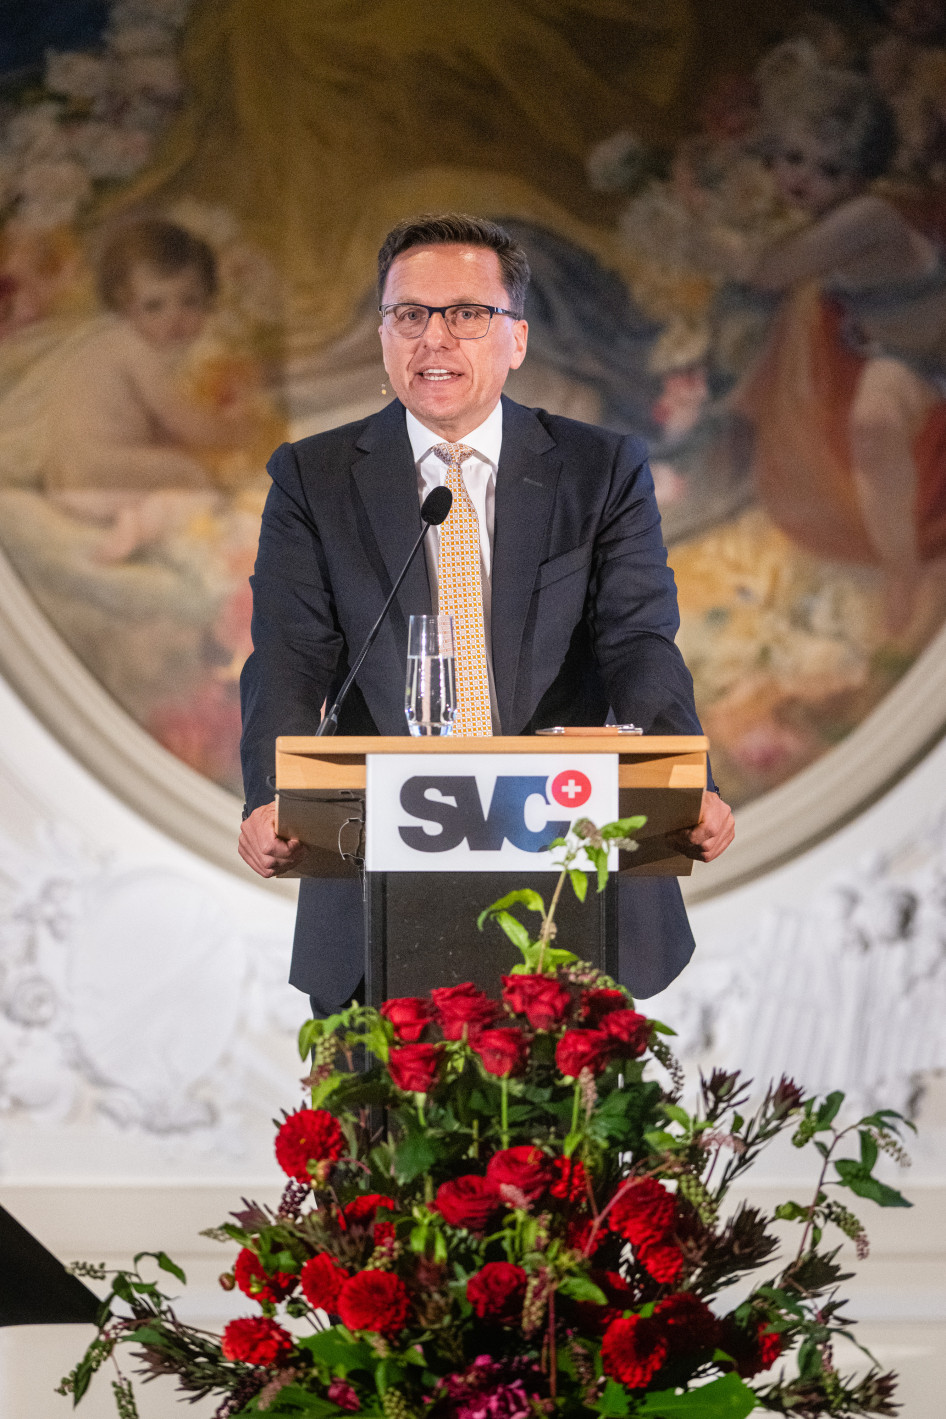 La 21e assemblée générale du SVC s'est tenue le 15 septembre à l'hôtel Bellevue Palace de Berne.